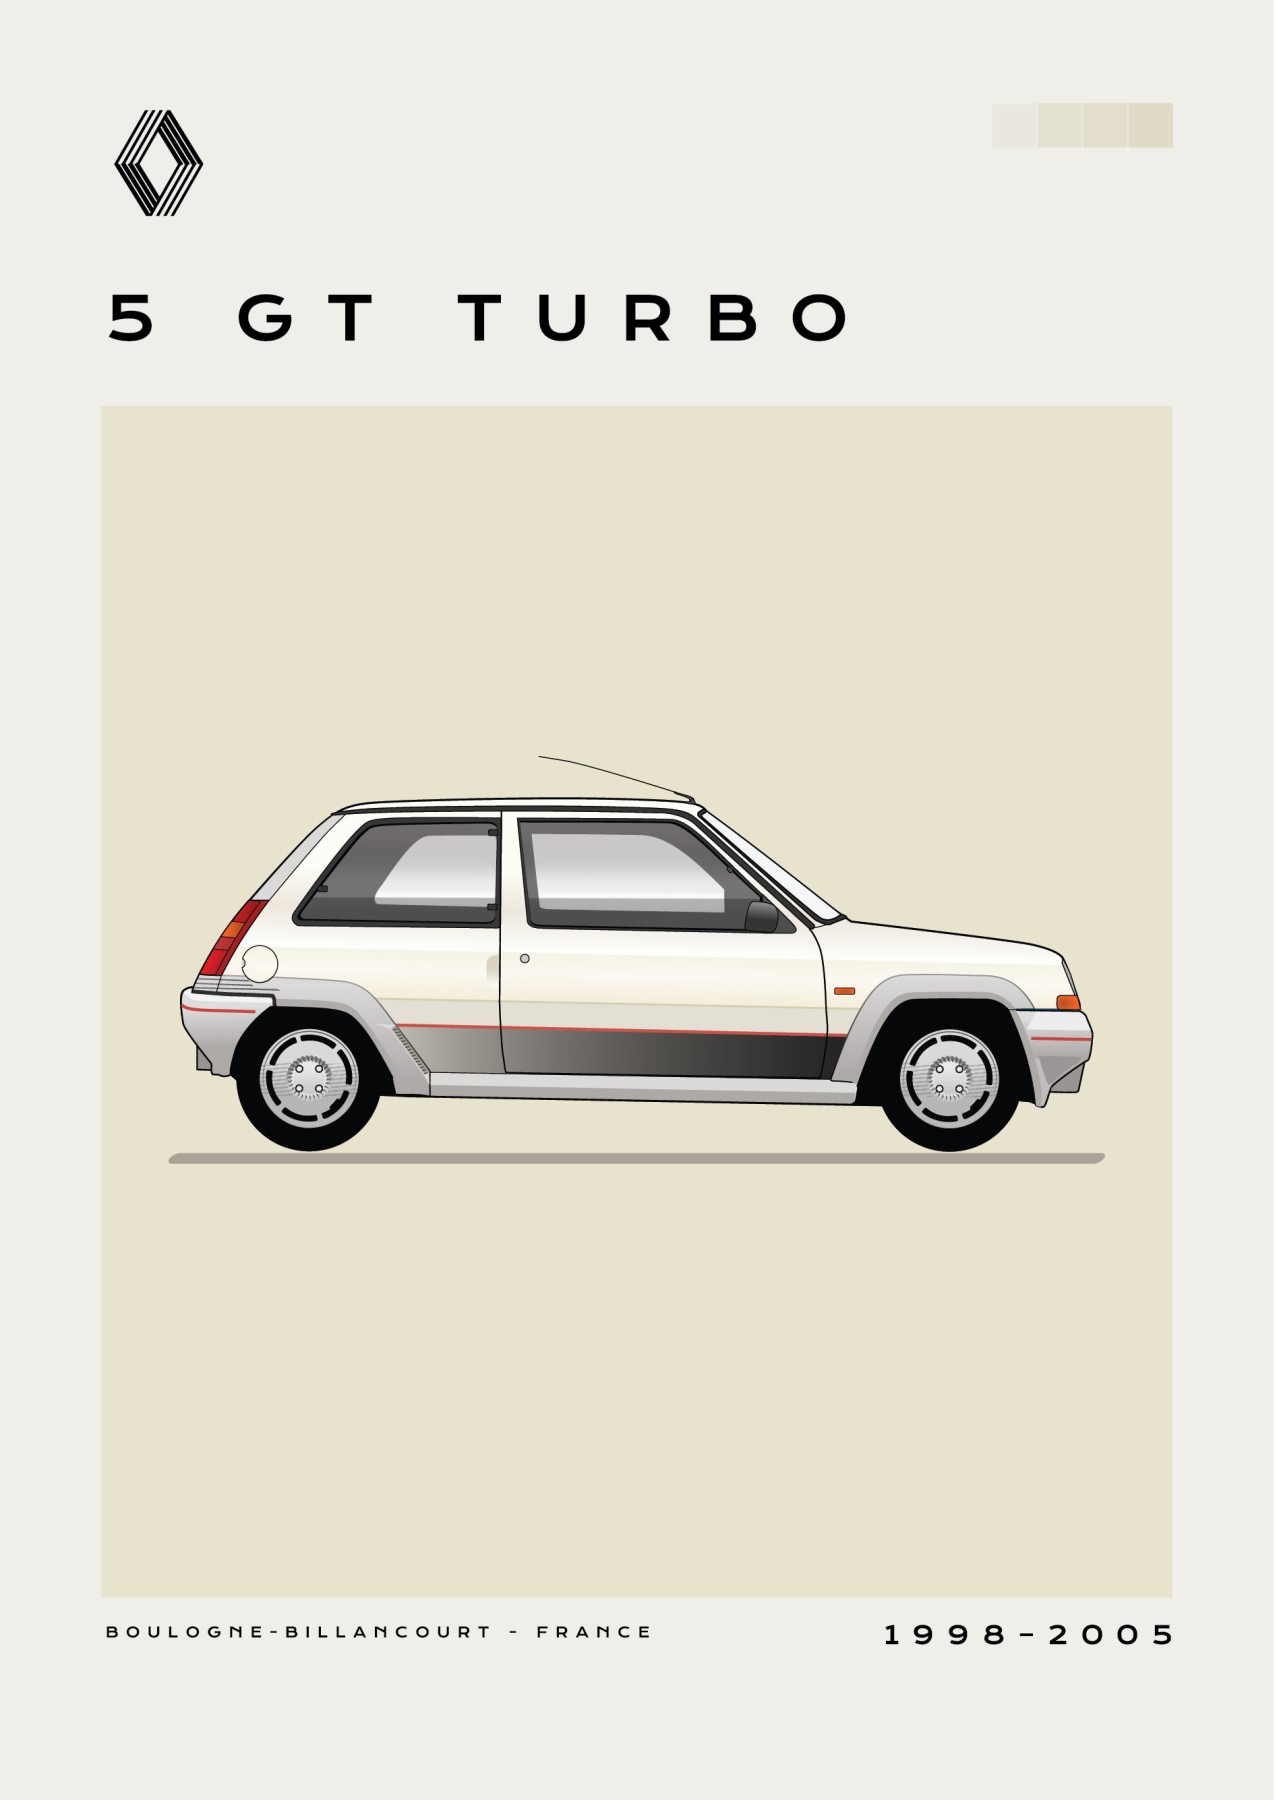 Renault - 5 GT Turbo - Creme